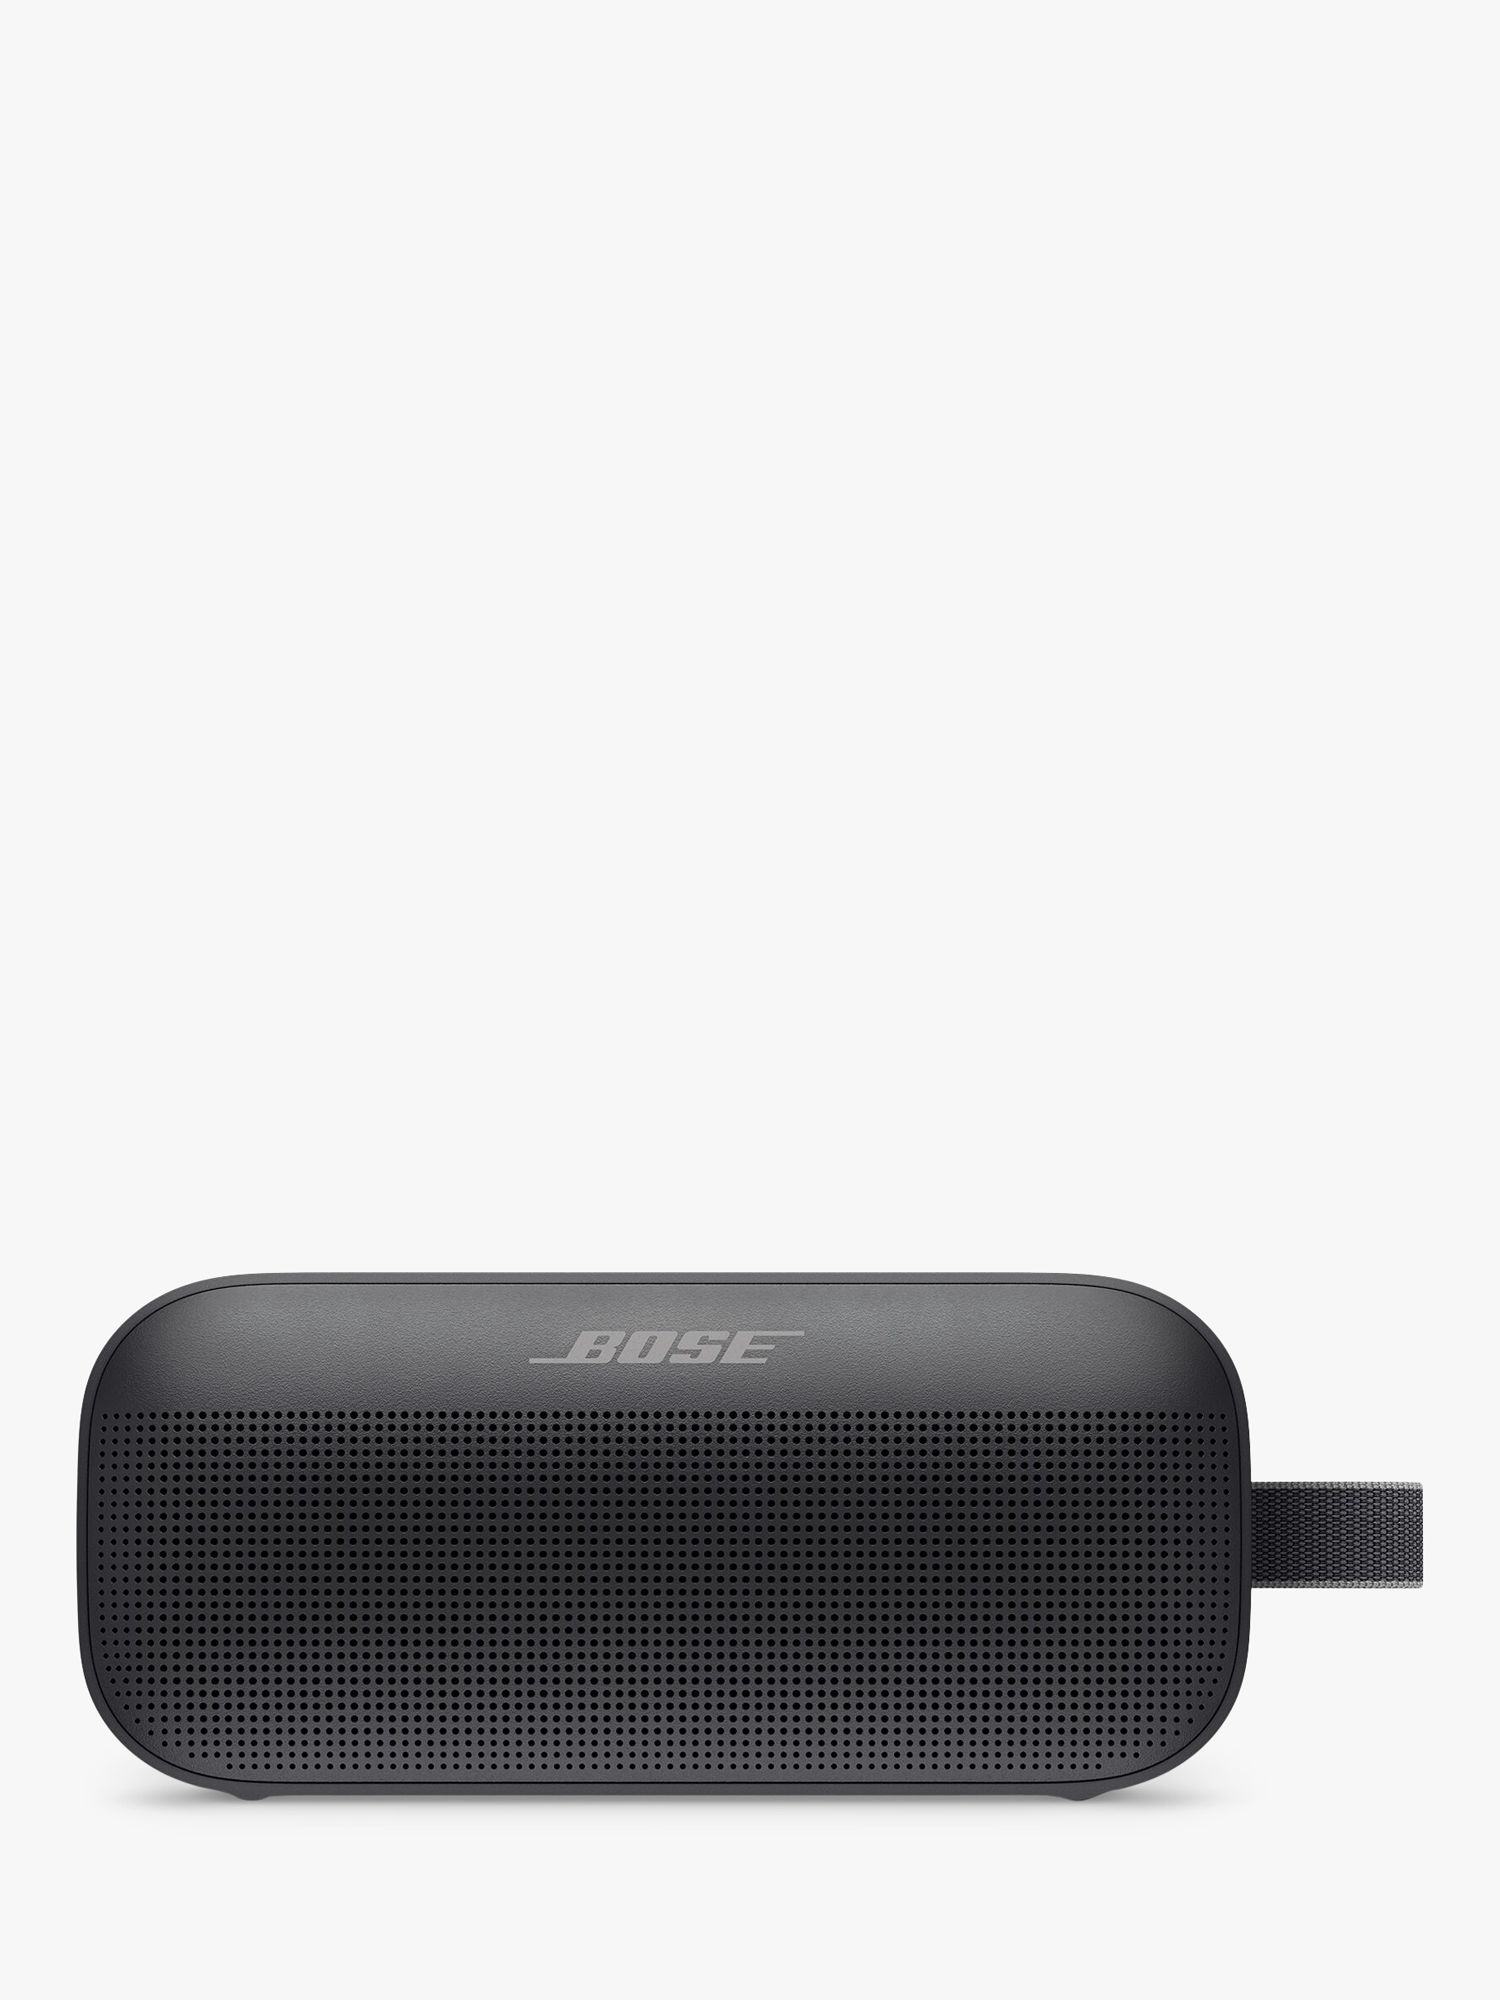 Buy Bose Soundlink Flex Bluetooth Speaker - Black